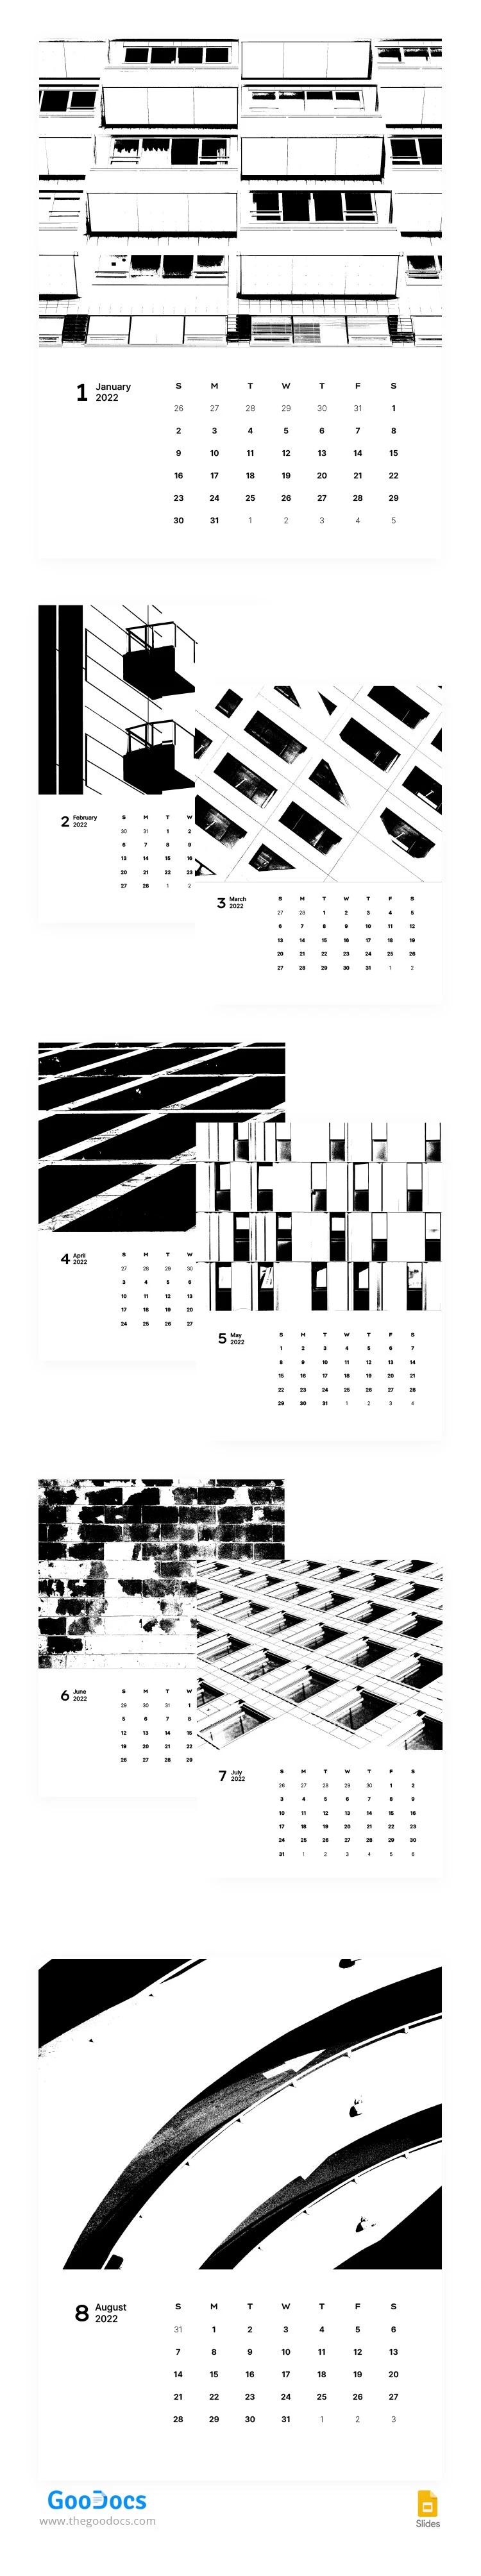 Calendrier stylisé en noir et blanc - free Google Docs Template - 10063075